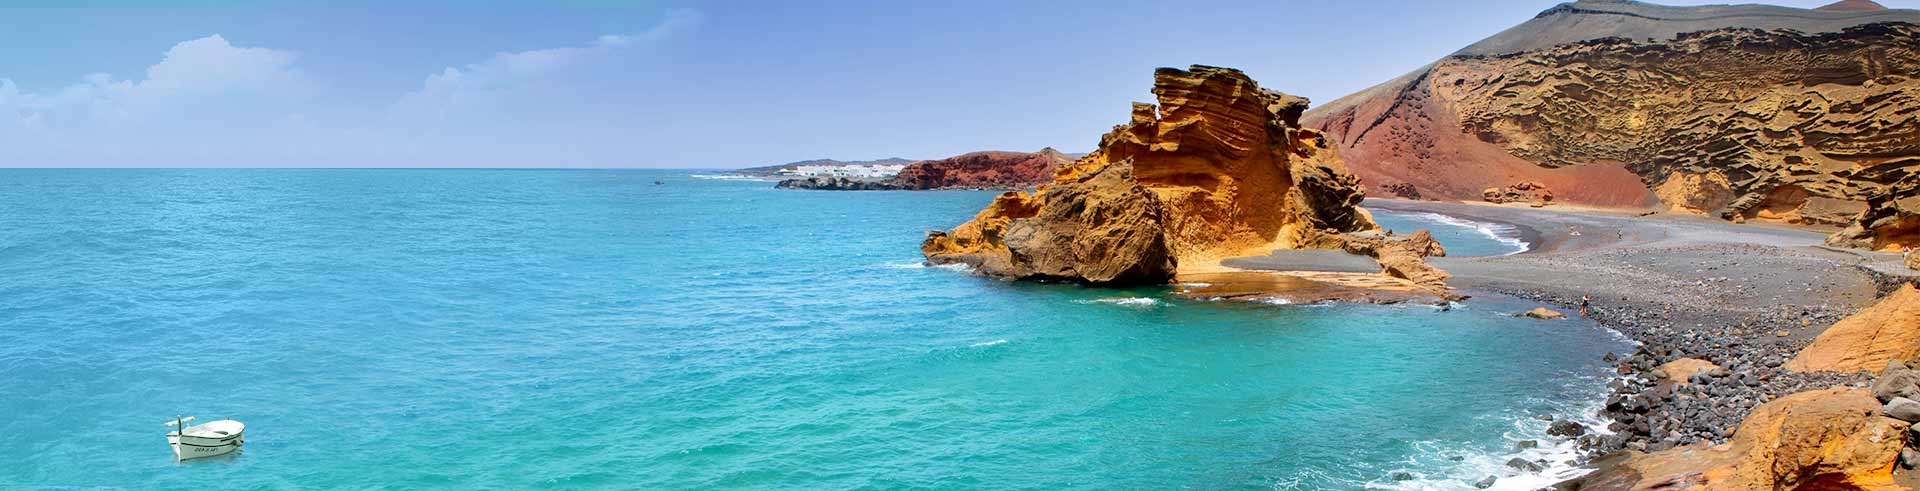 Location de Voitures Lanzarote, Playa Blanca